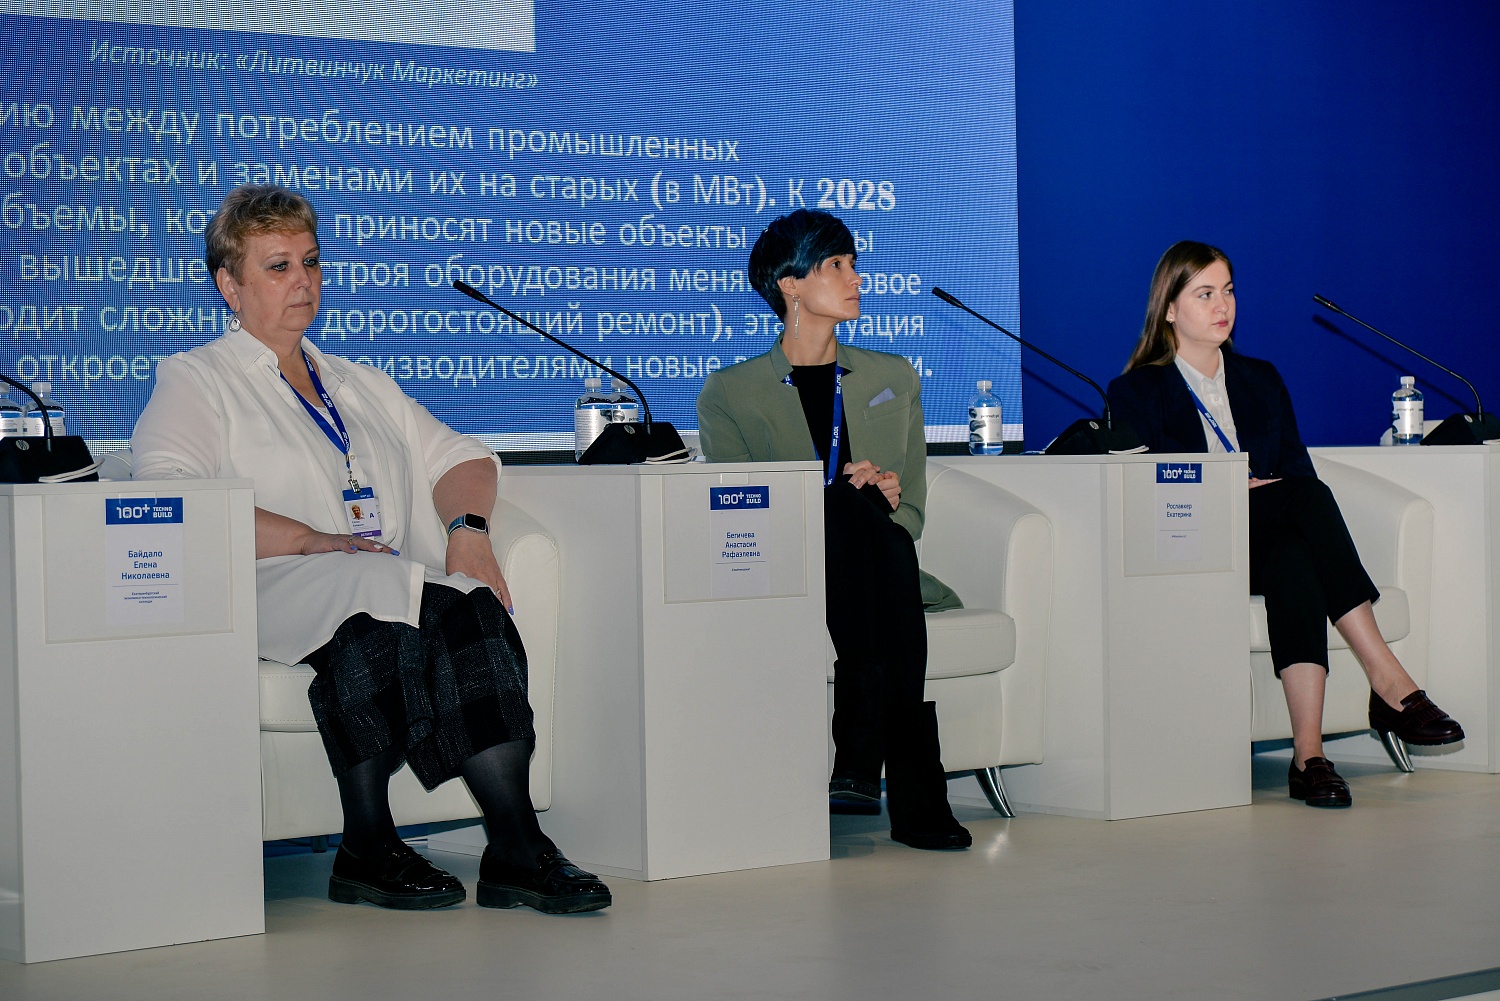 Состоялся IV форум по промышленному кондиционированию «Building Climate Forum»